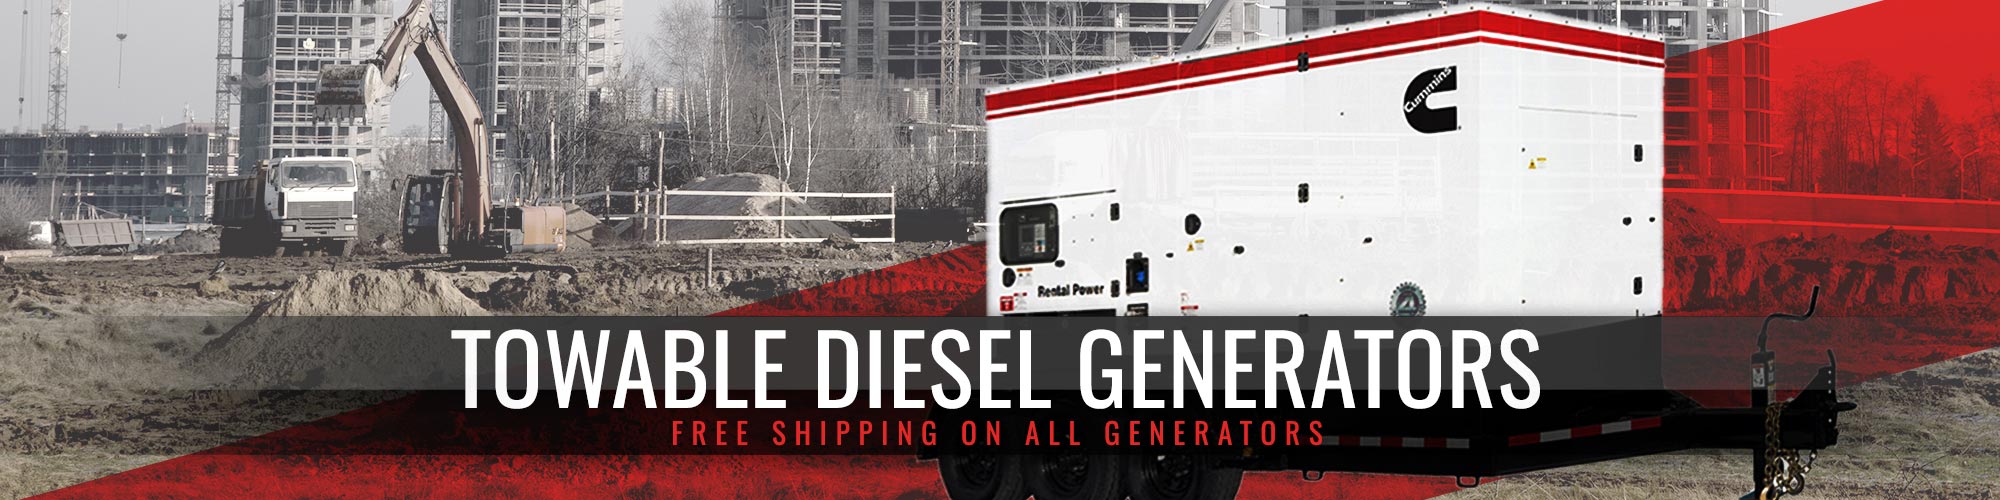 Towable Diesel Generators